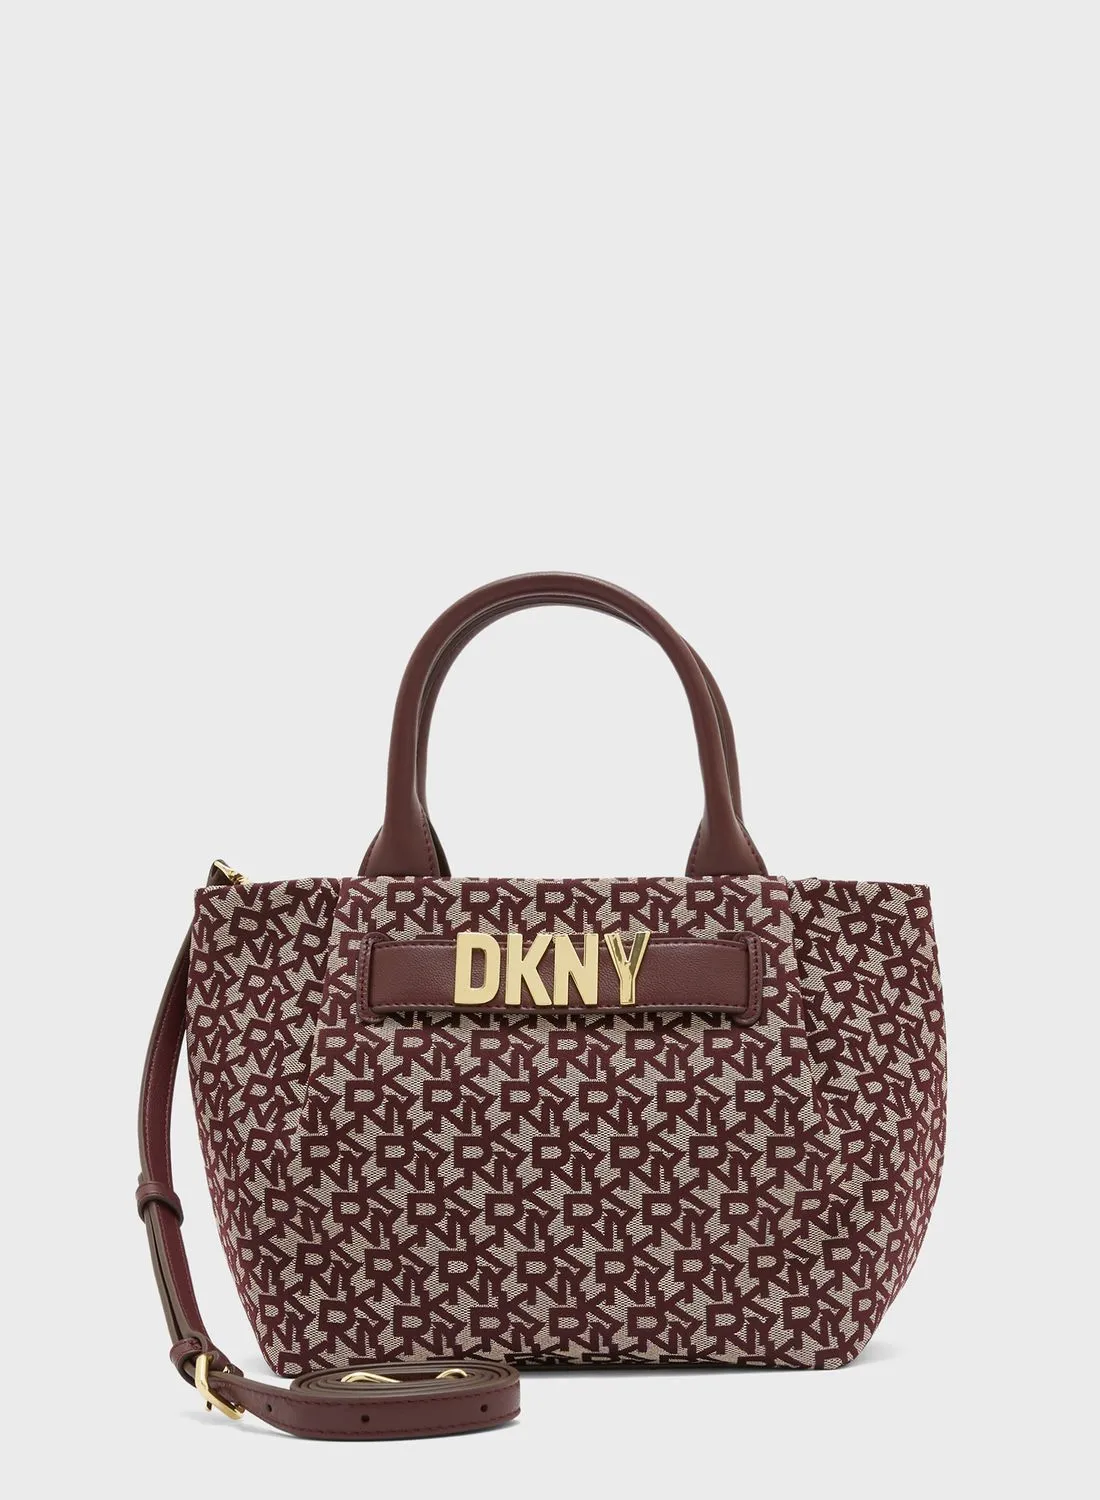 DKNY Pilar Top Handle Satchels Bags